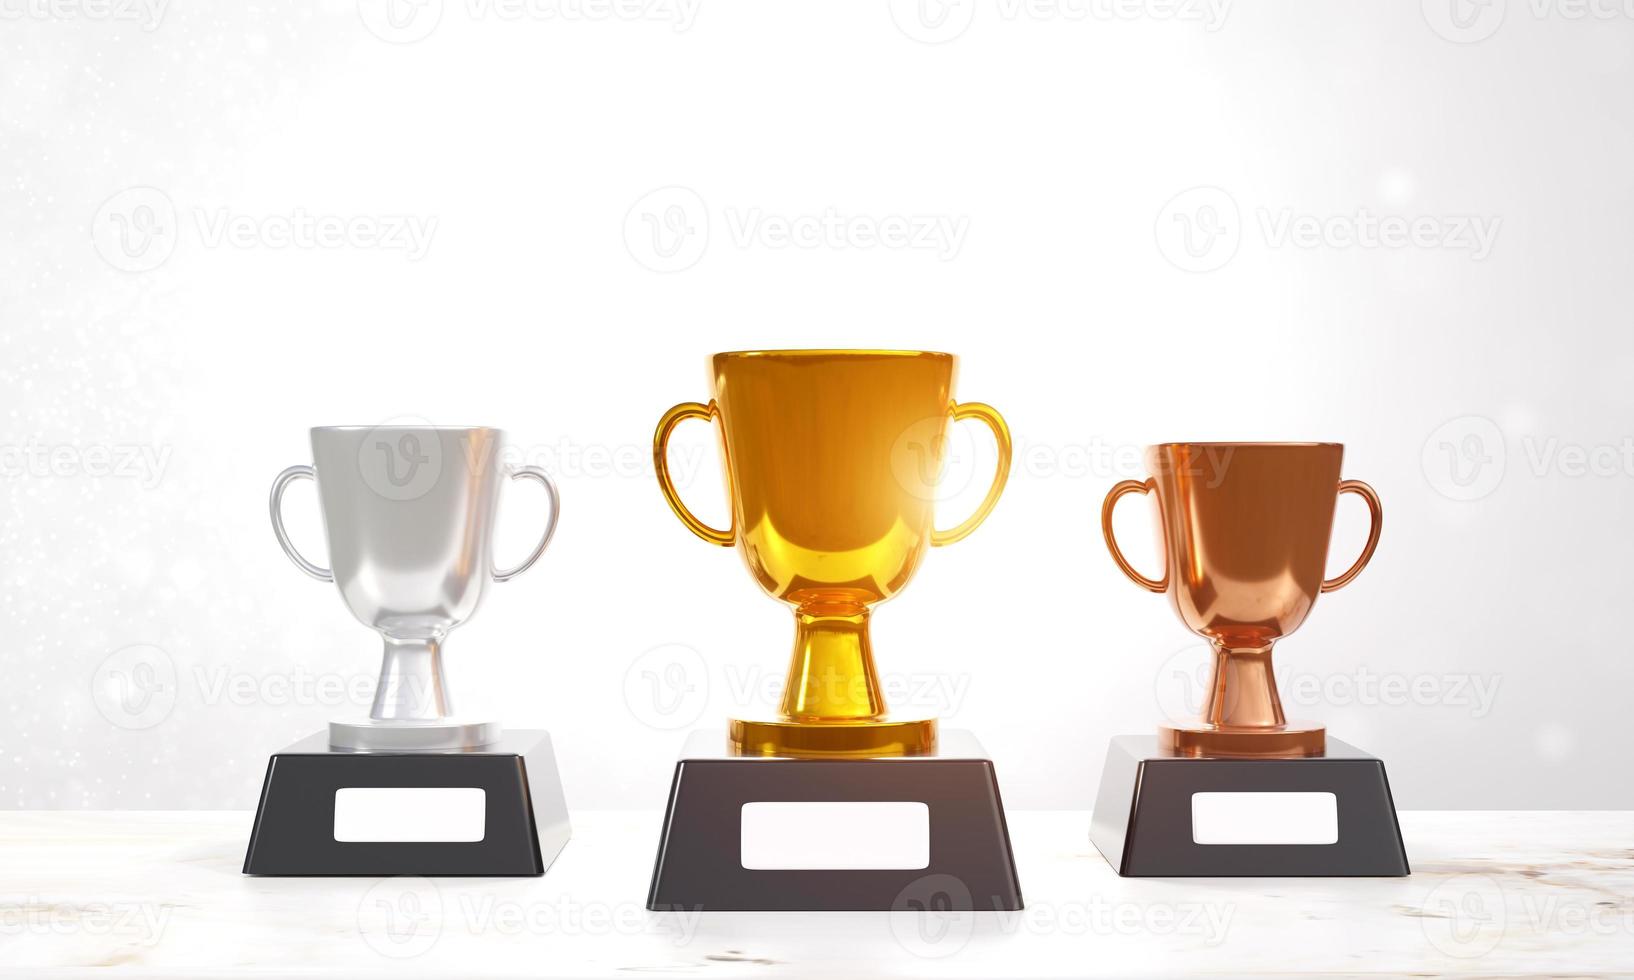 trofeos para los ganadores. conjunto de trofeos de oro, plata y bronce sobre fondo blanco. concepto ganador, diseño de premios, logro, 1°, 2°, 3° lugar. ilustración de renderizado 3d foto